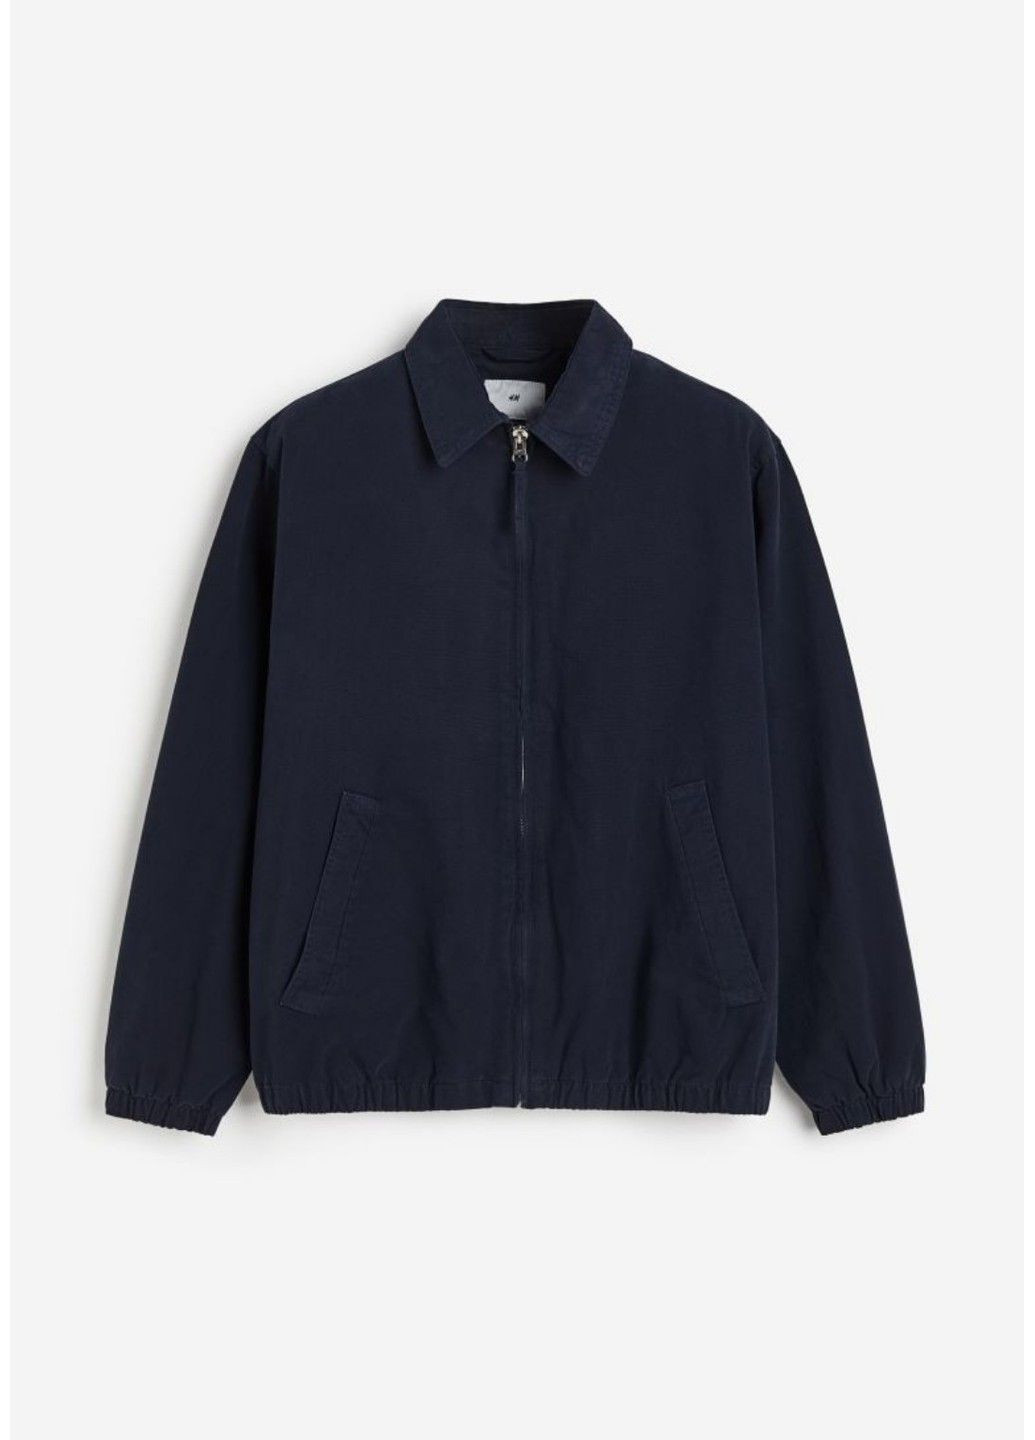 Темно-синяя демисезонная мужская твиловая куртка свободного кроя н&м (56795) l темно-синяя H&M